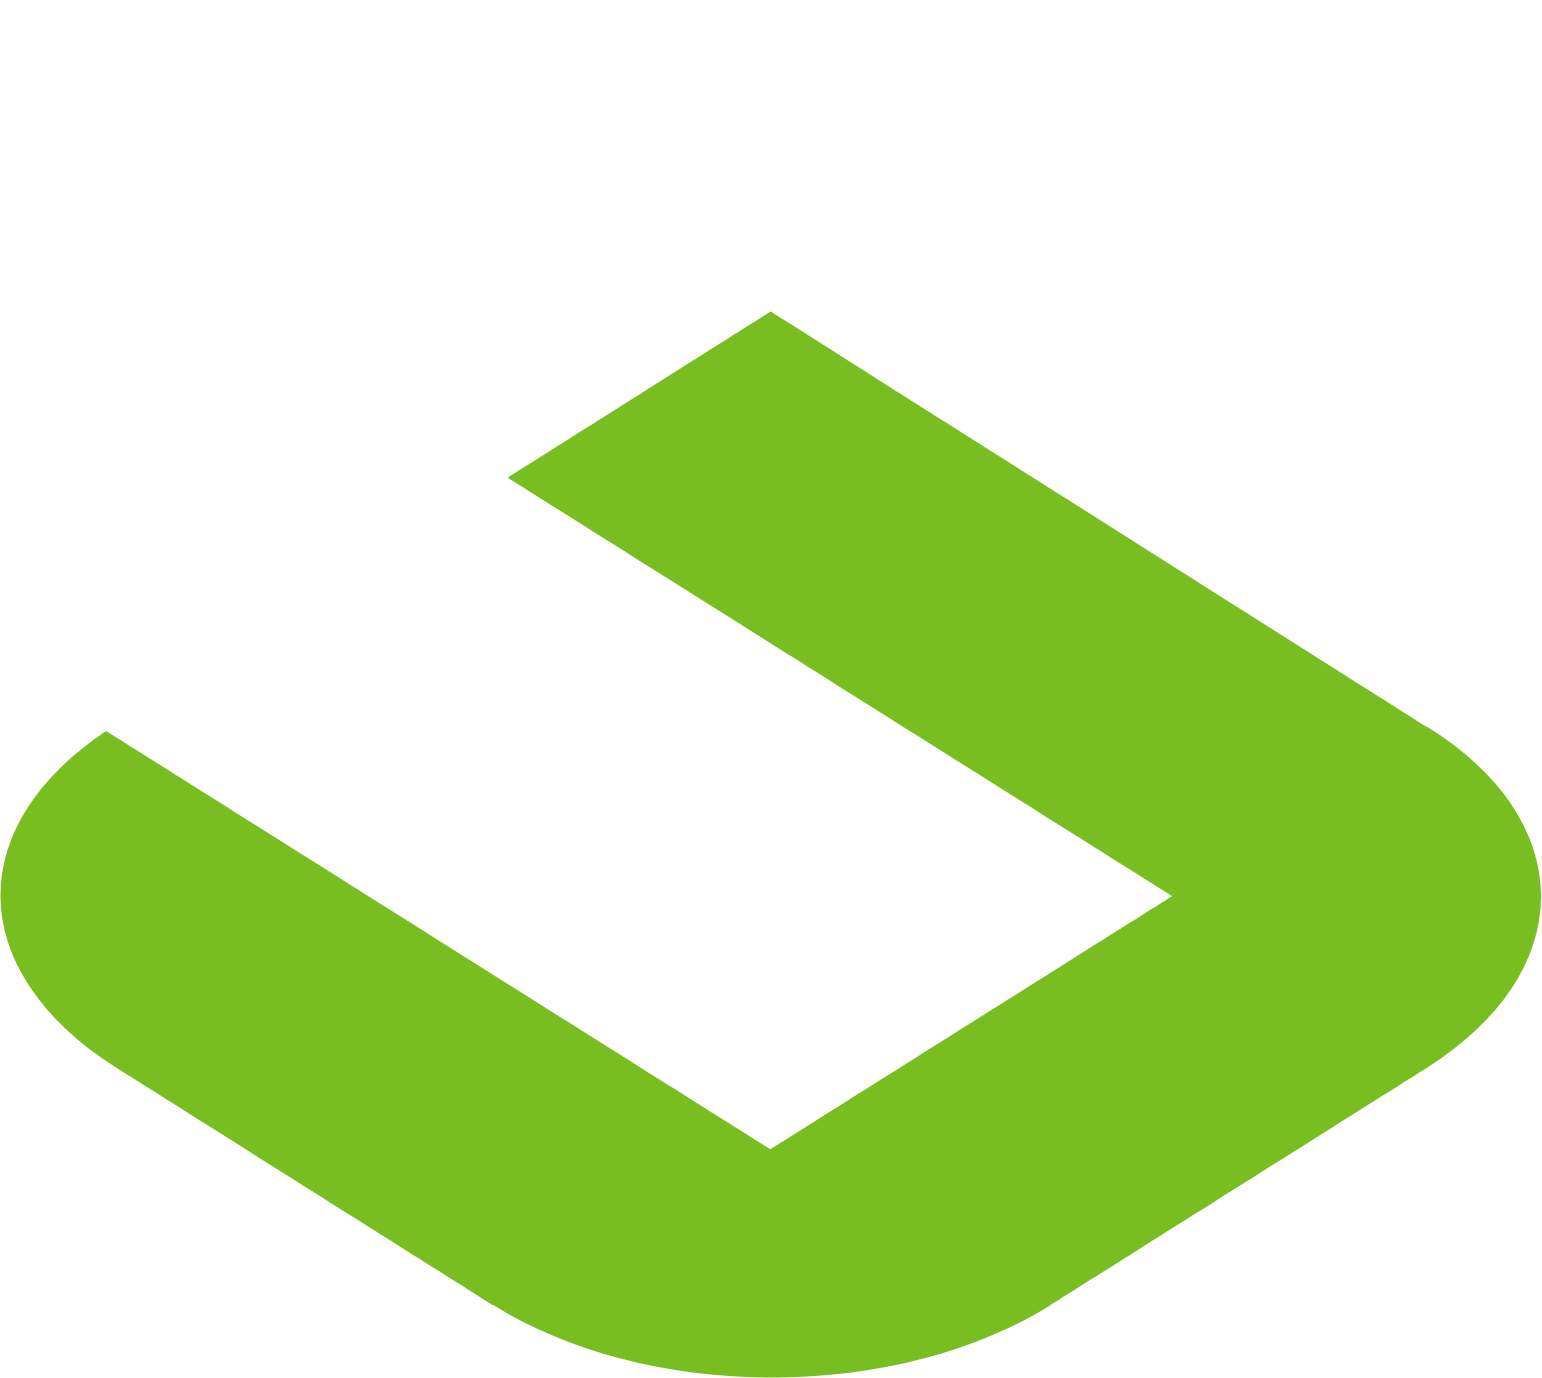 Symbotic logo for dark backgrounds (transparent PNG)